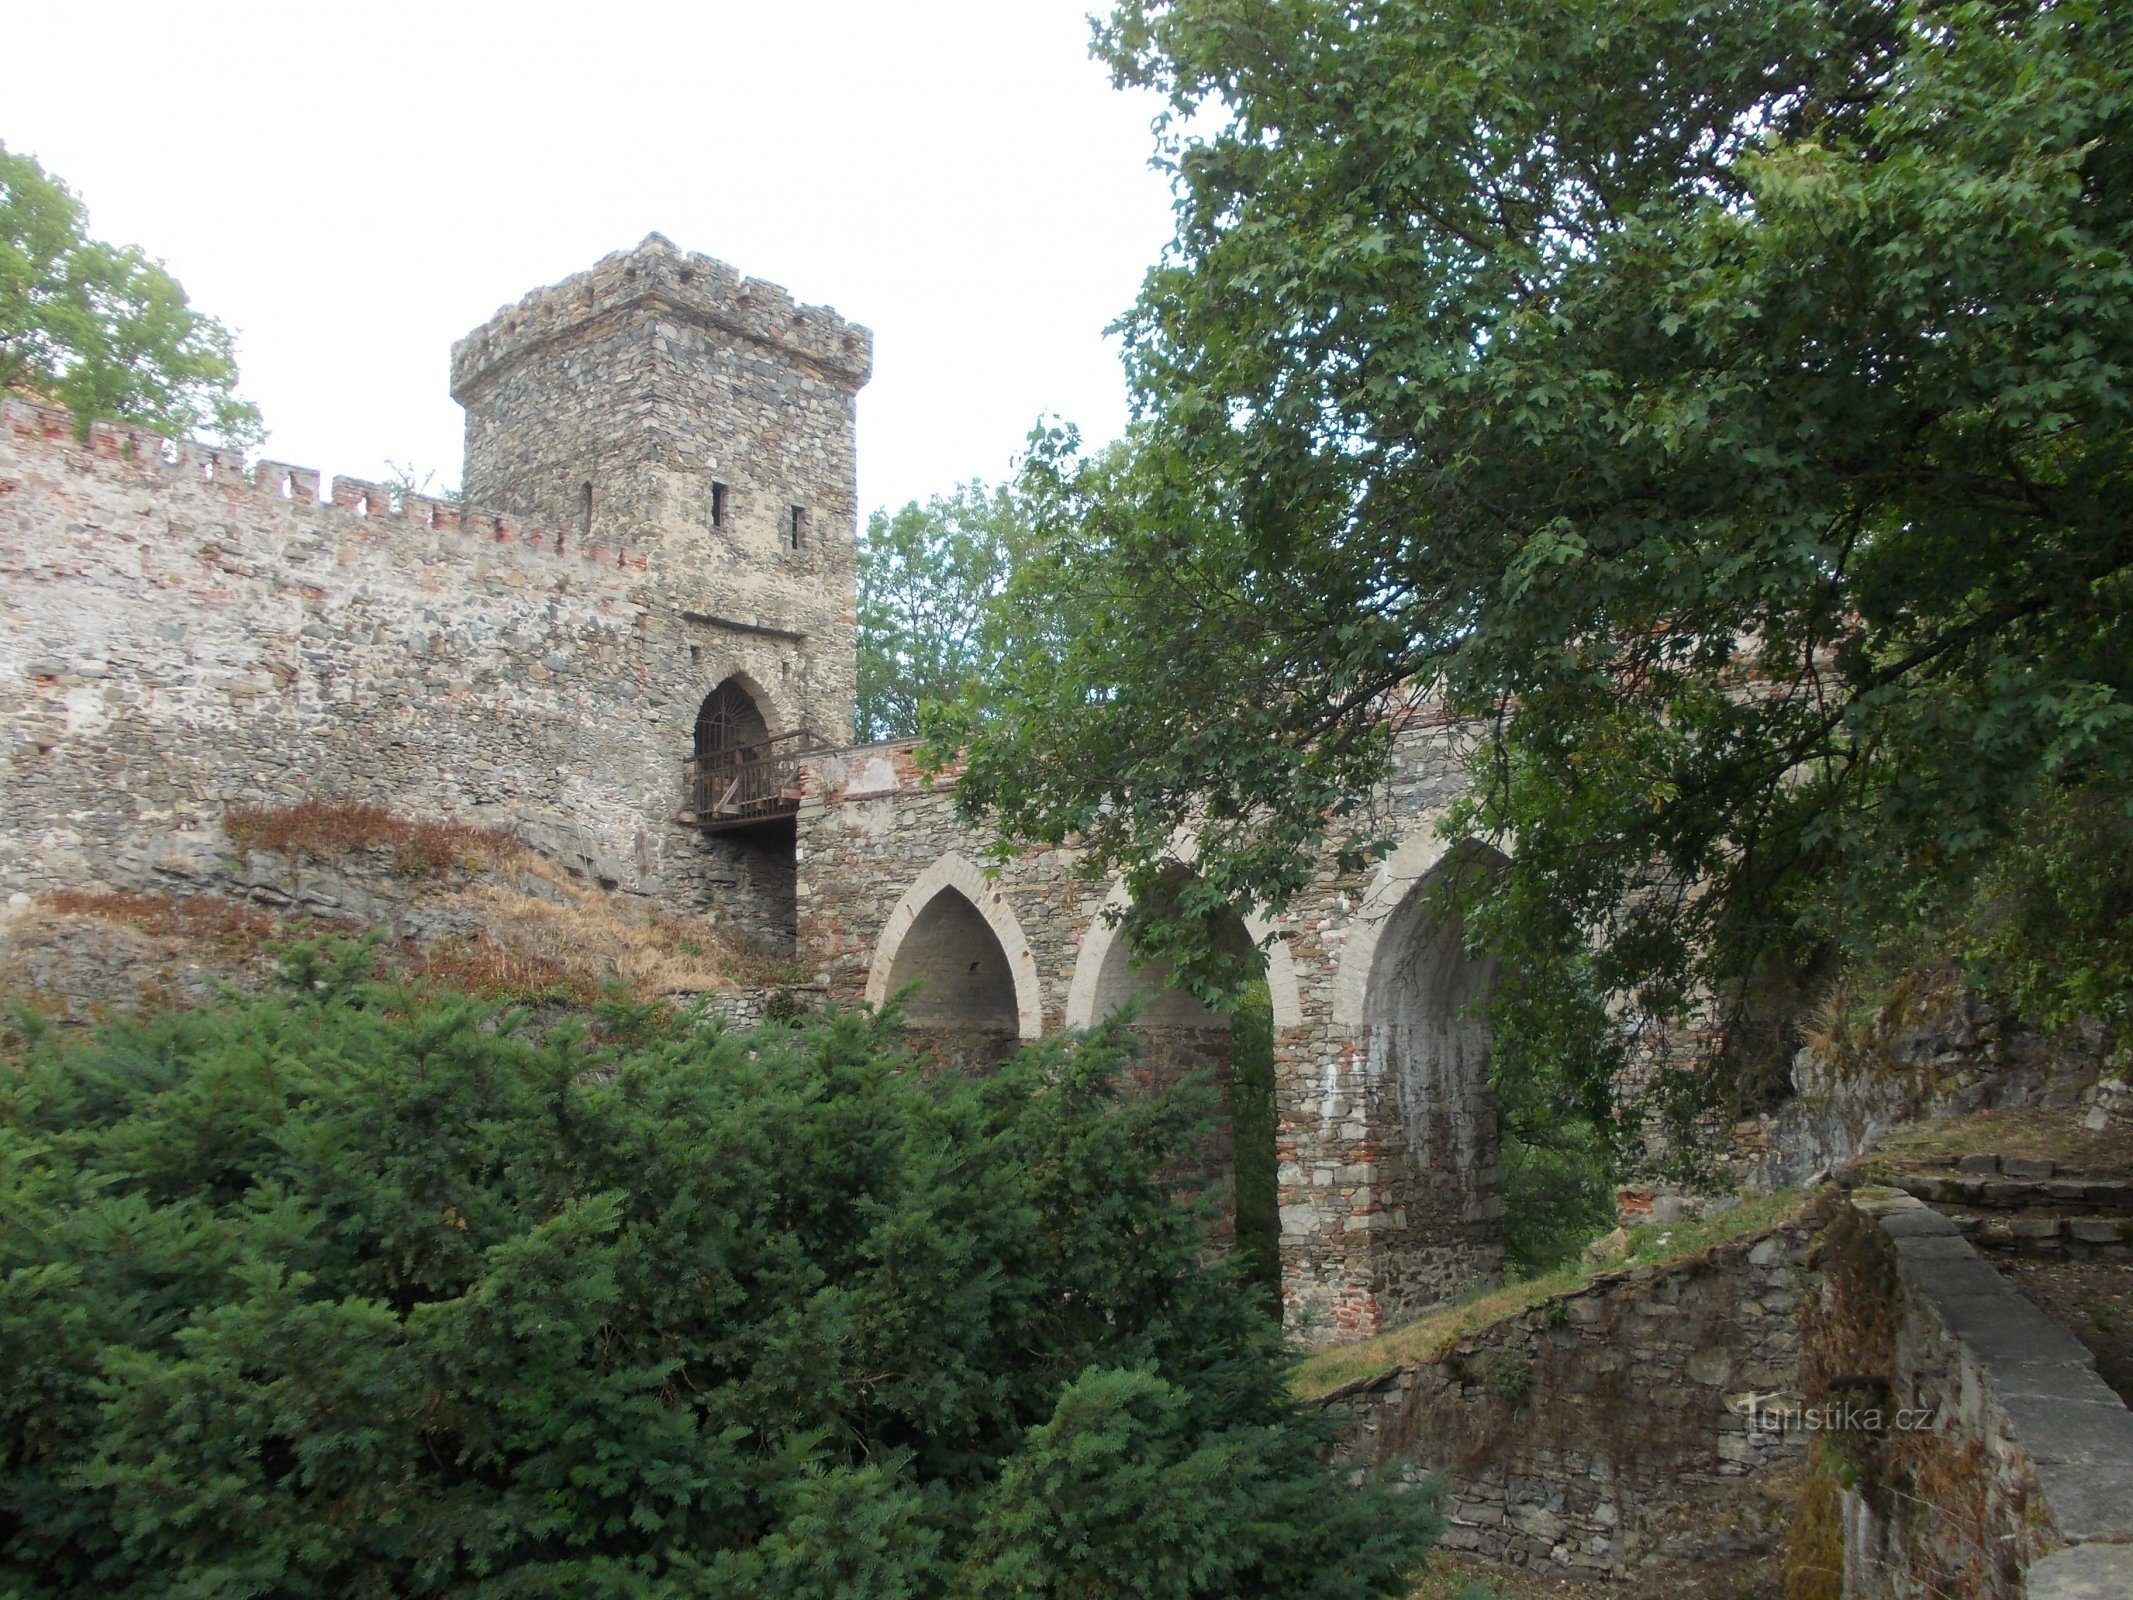 τα τείχη του κάστρου και ο δρόμος προσέγγισης πάνω από τη γέφυρα προς το κάστρο